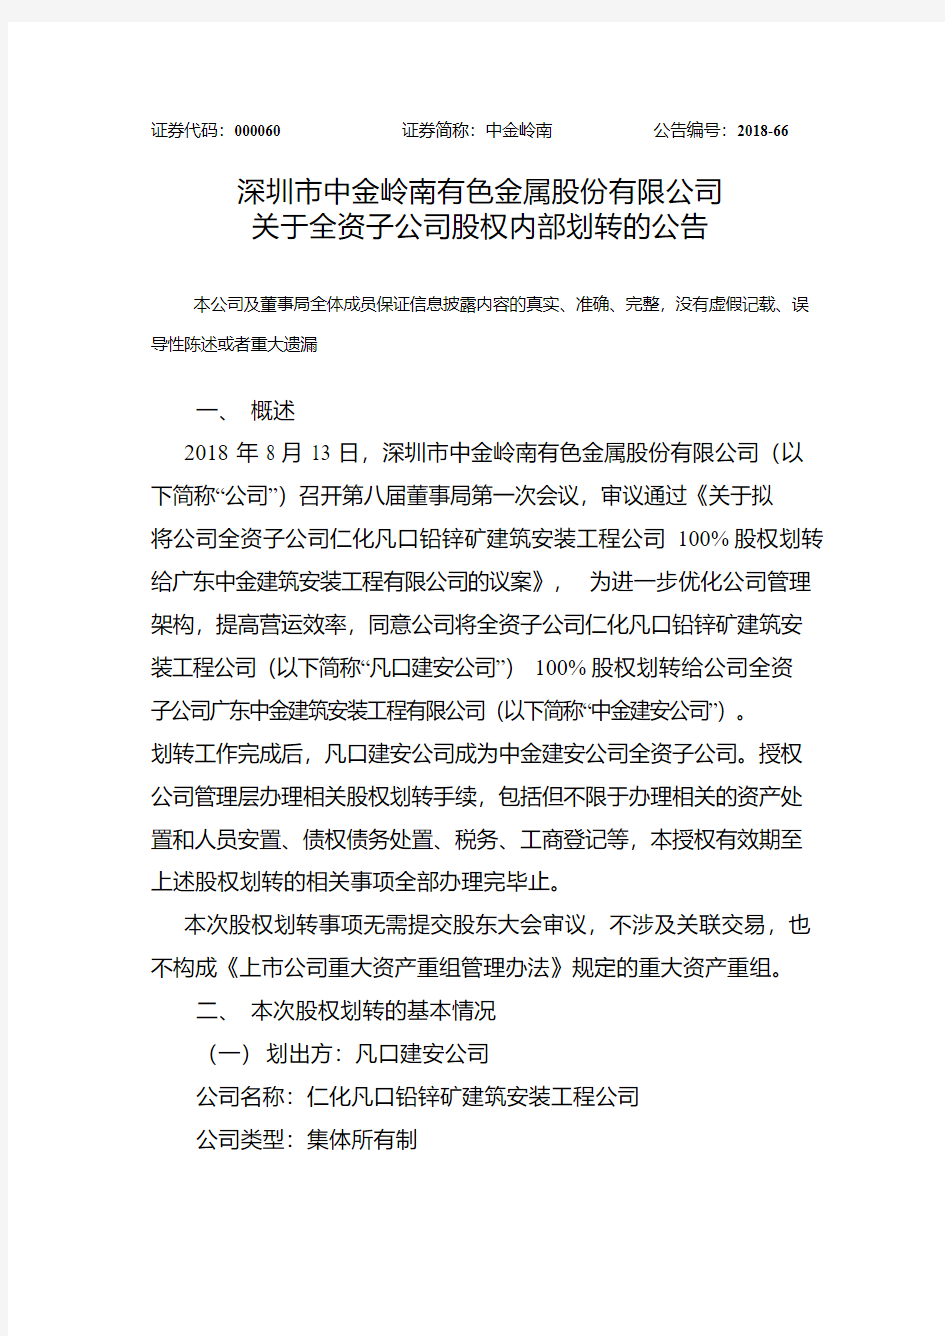 中金岭南：关于全资子公司股权内部划转的公告